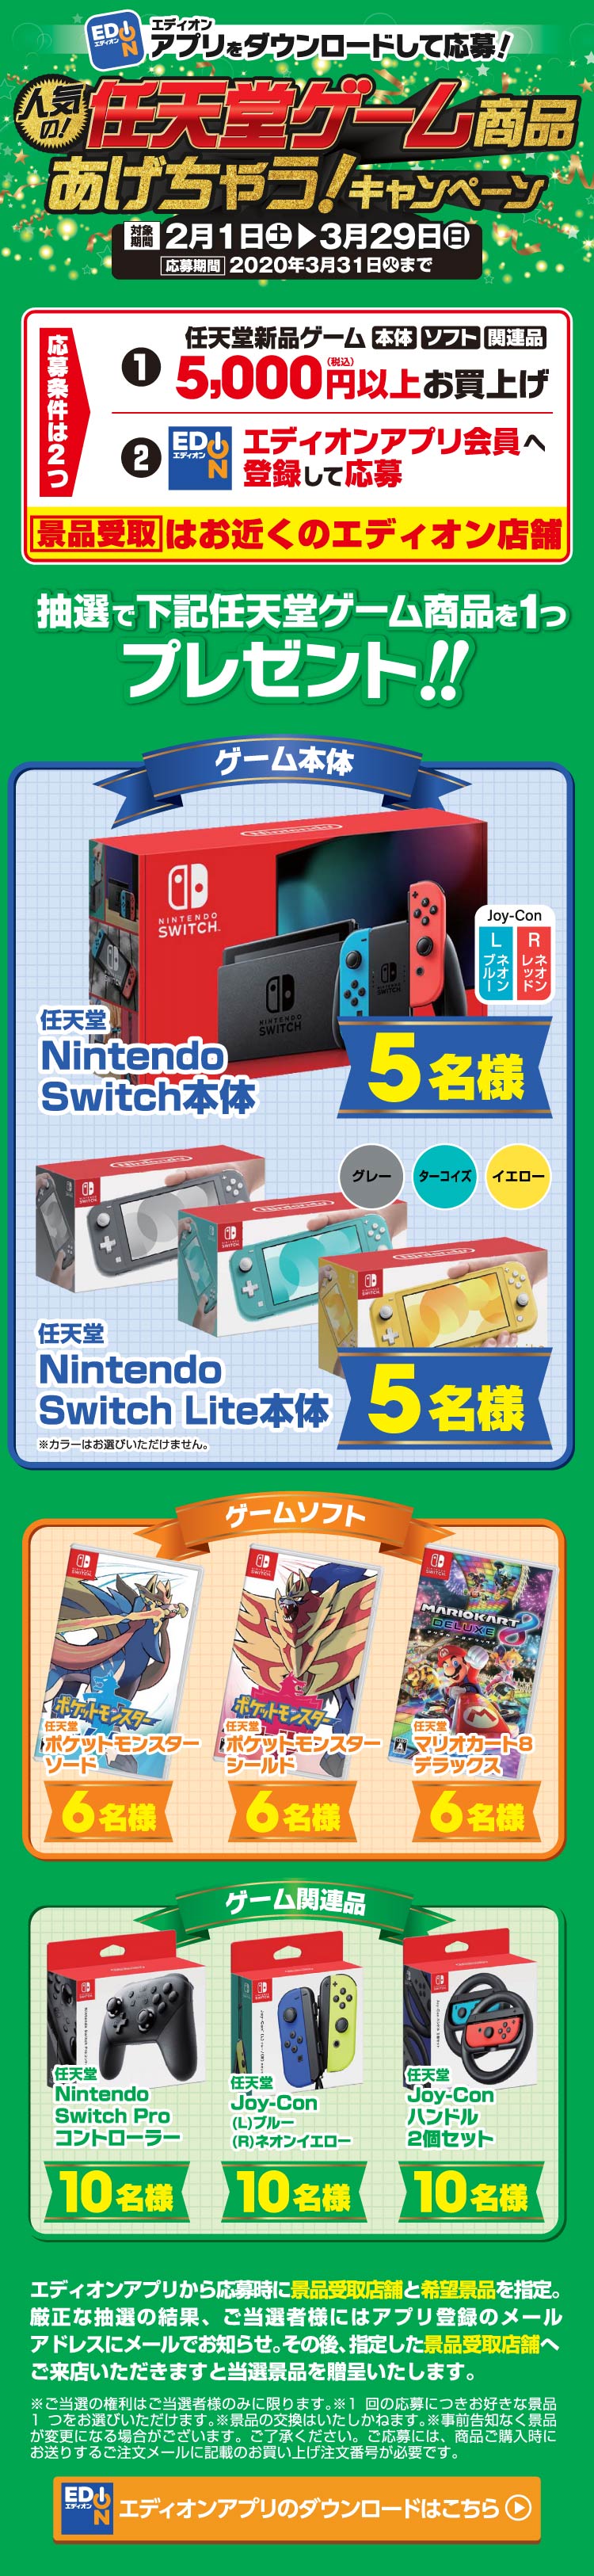 エディオン スイッチ 抽選 Nintendo Switch ニンテンドースイッチ の抽選 予約方法 値段 販売店舗まとめ